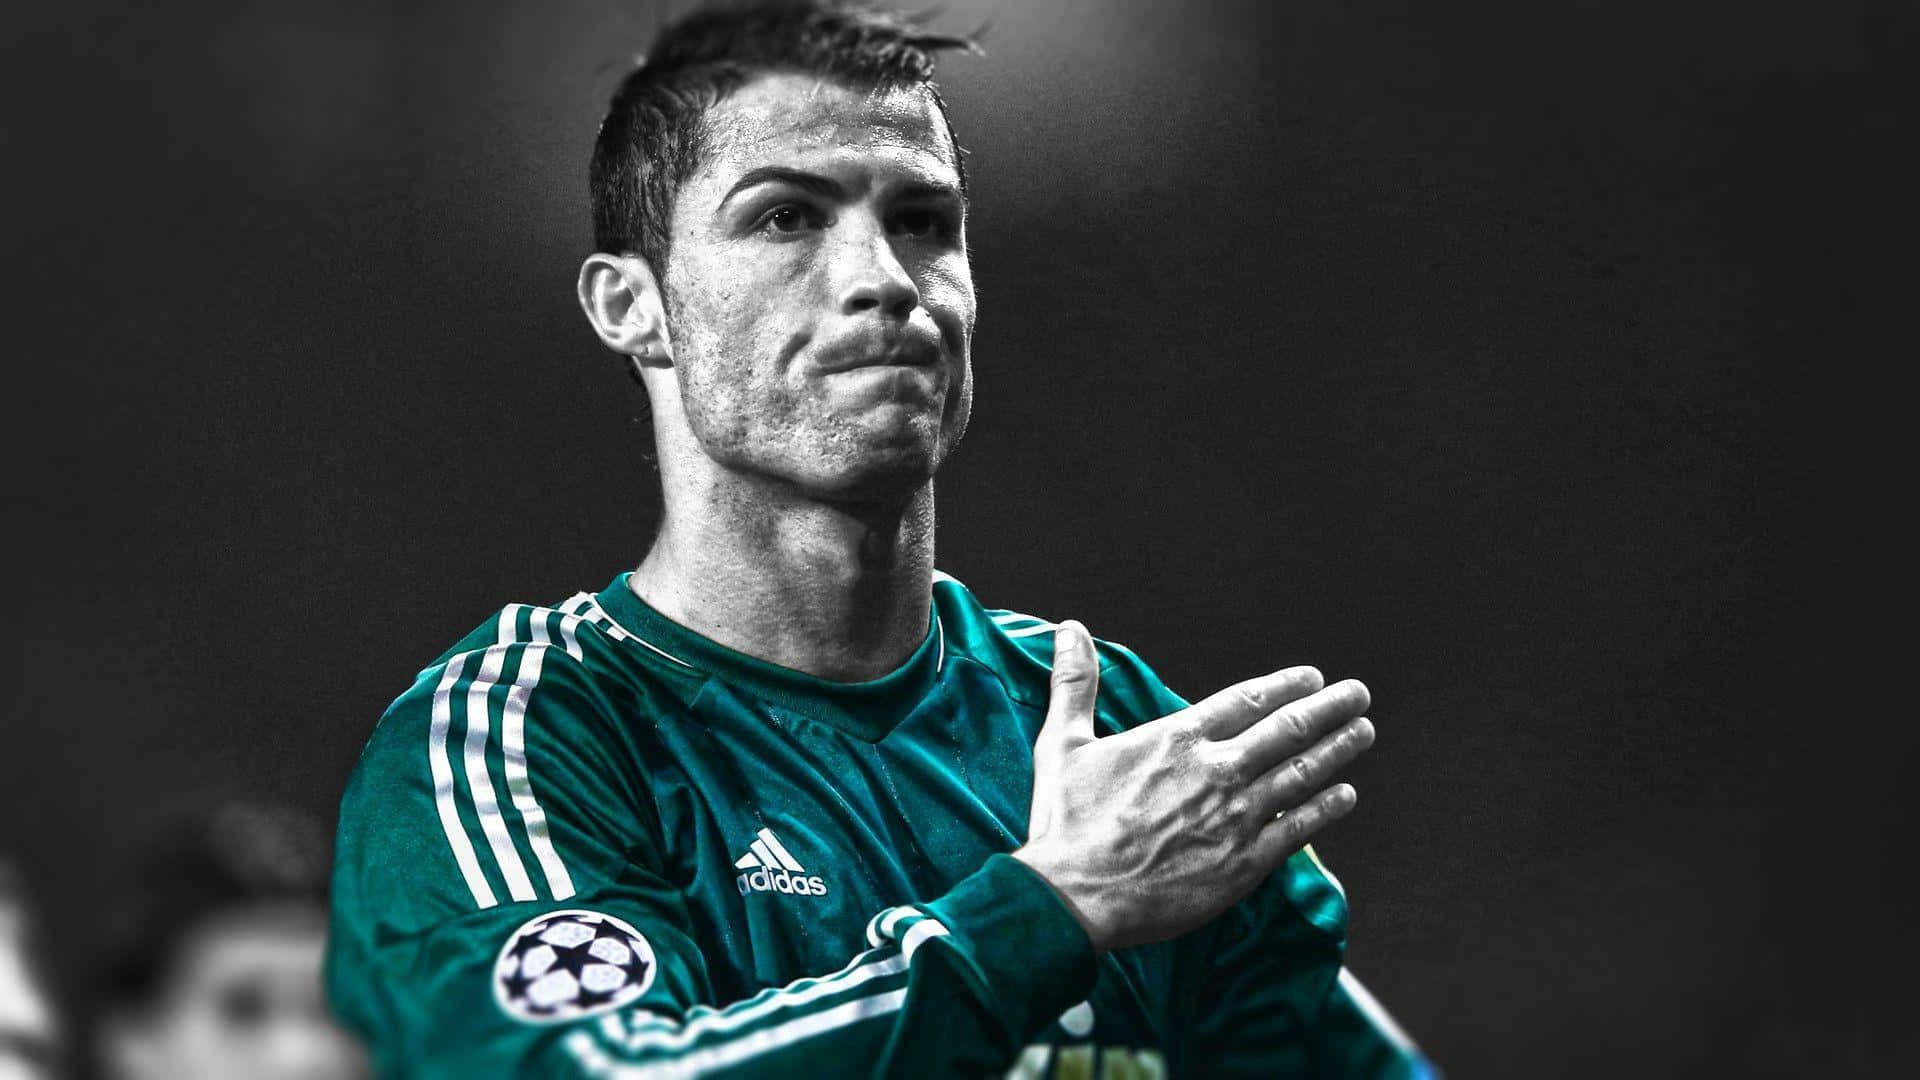 Cristiano Ronaldo - The Phenomenal Soccer Legend